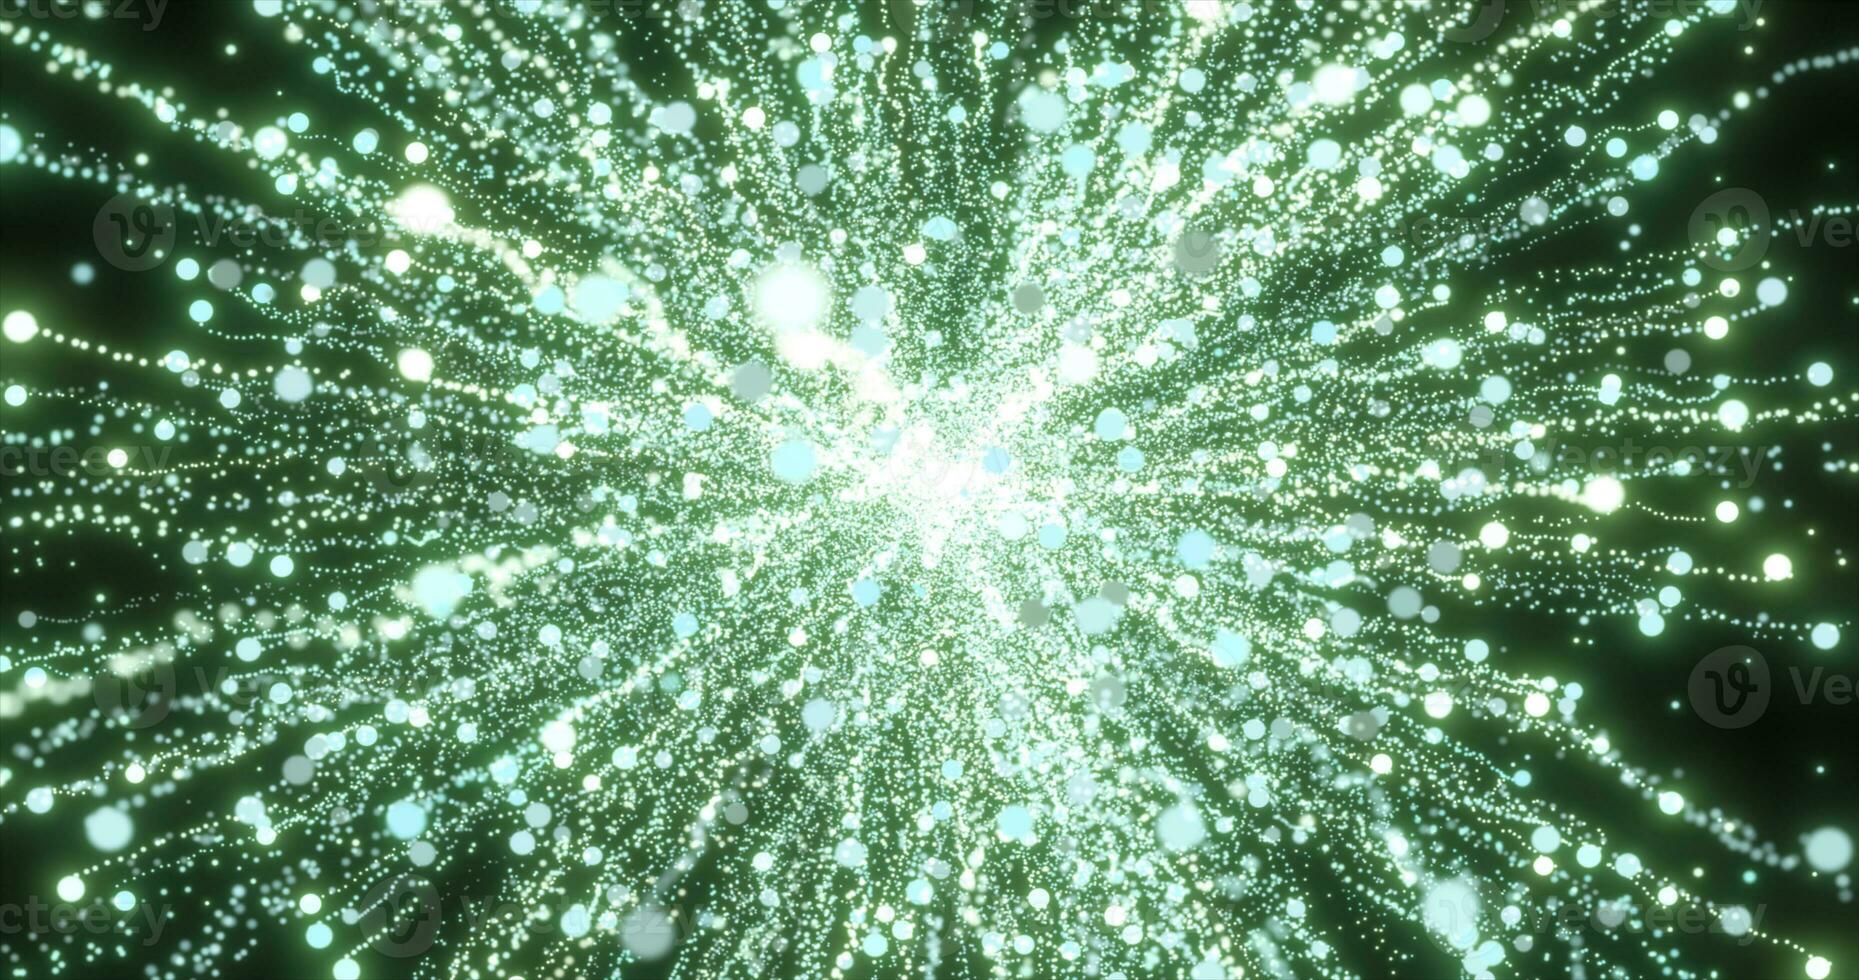 astratto verde energia fuochi d'artificio particella saluto magico luminosa raggiante futuristico hi-tech con sfocatura effetto e bokeh sfondo foto